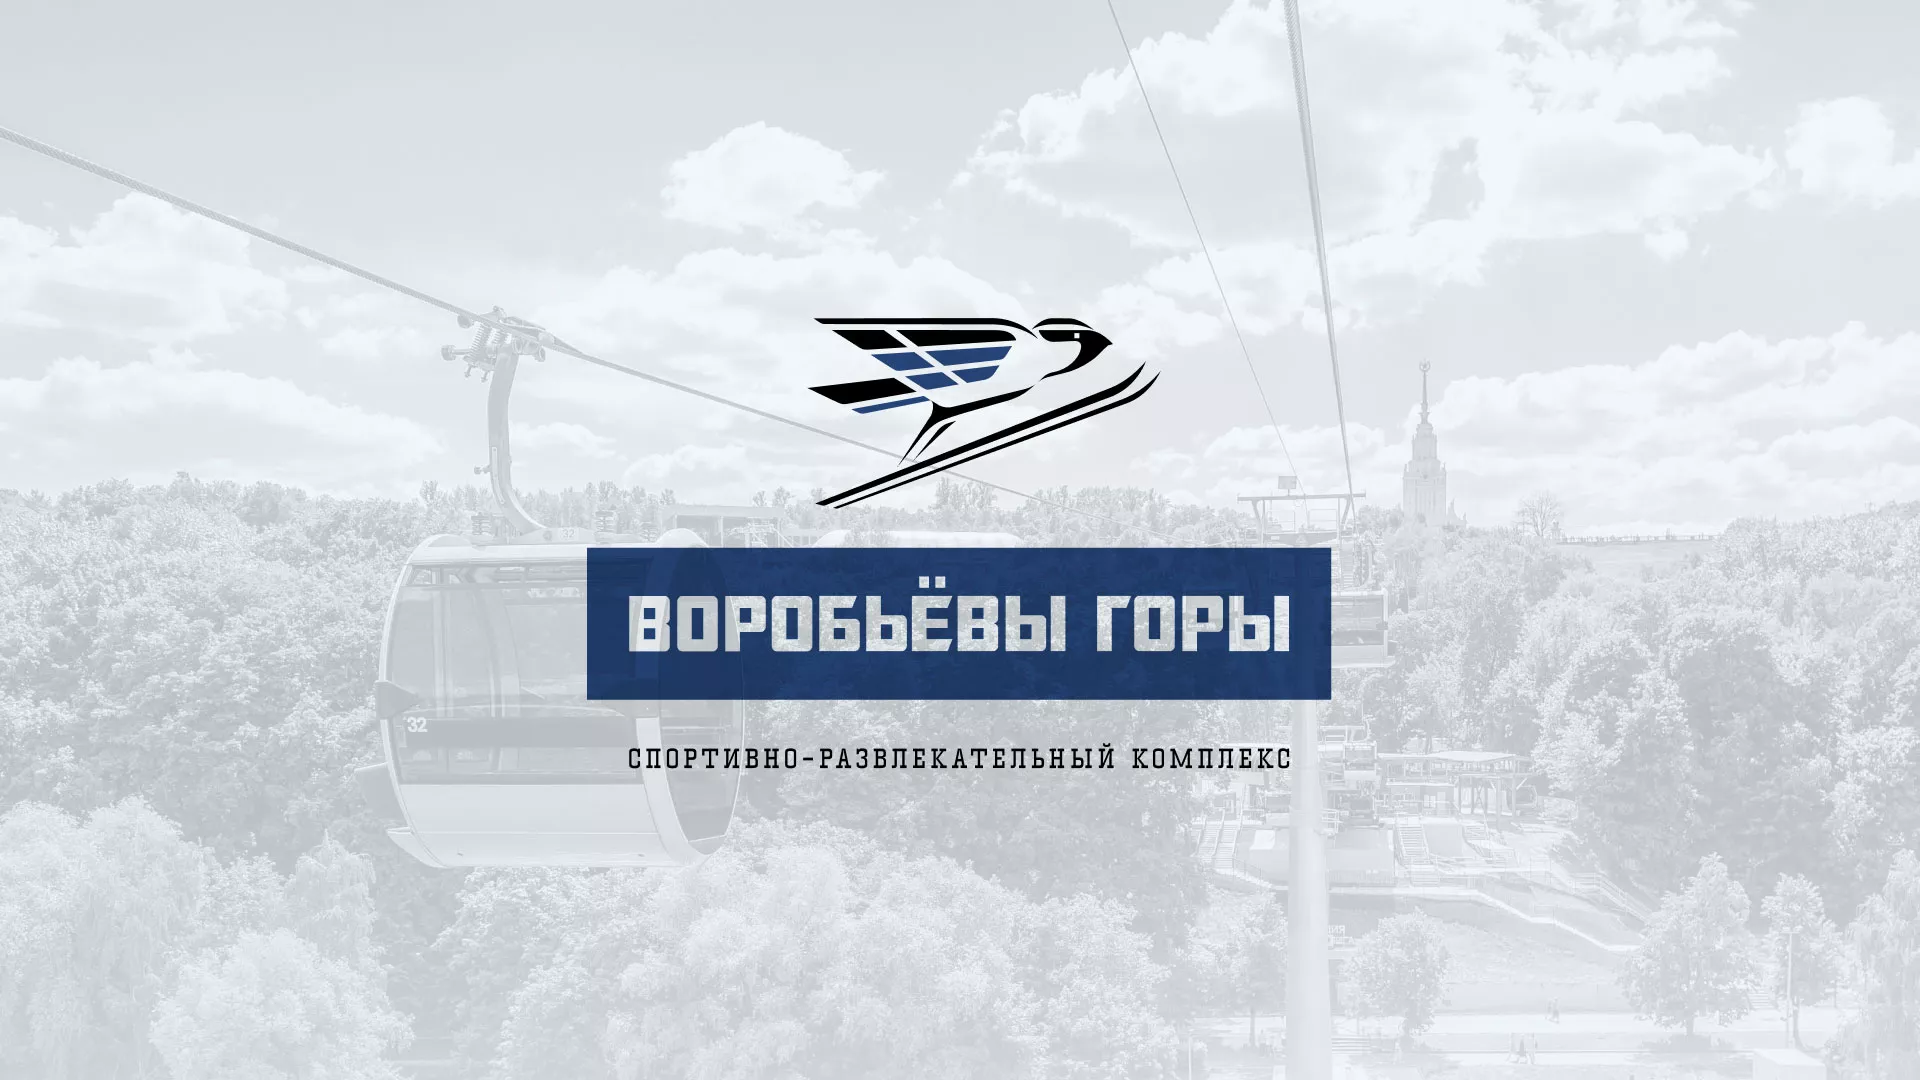 Разработка сайта в Волгограде для спортивно-развлекательного комплекса «Воробьёвы горы»